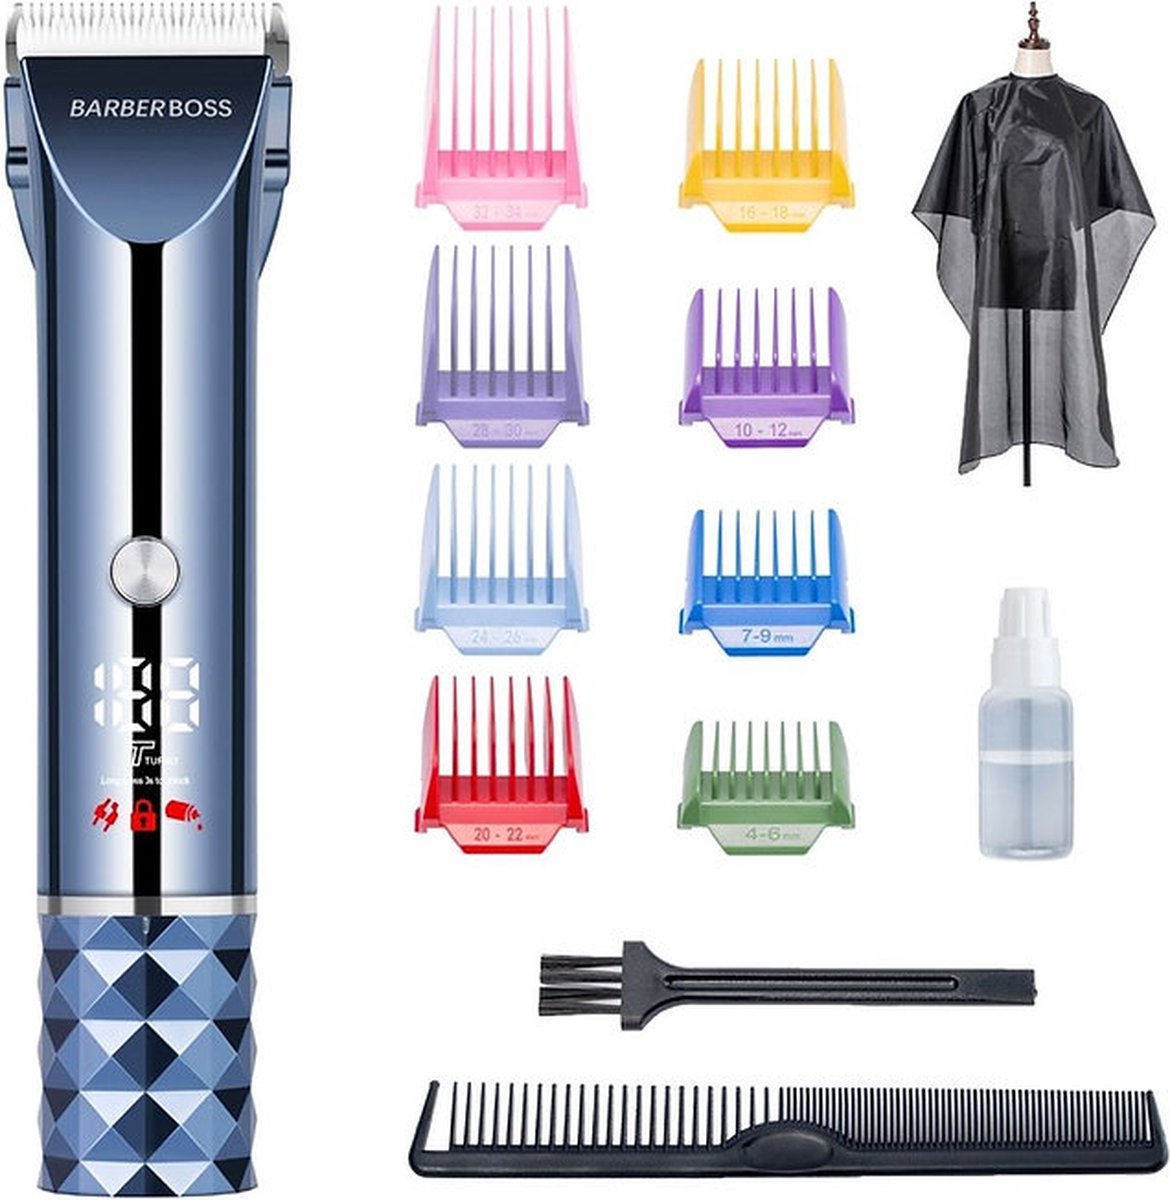 Barberboss Professionele Tondeuse QR-2091 - Hair Clipper - Draadloze Haartrimmer - LED-display - Incl. Schort en opzetstukken